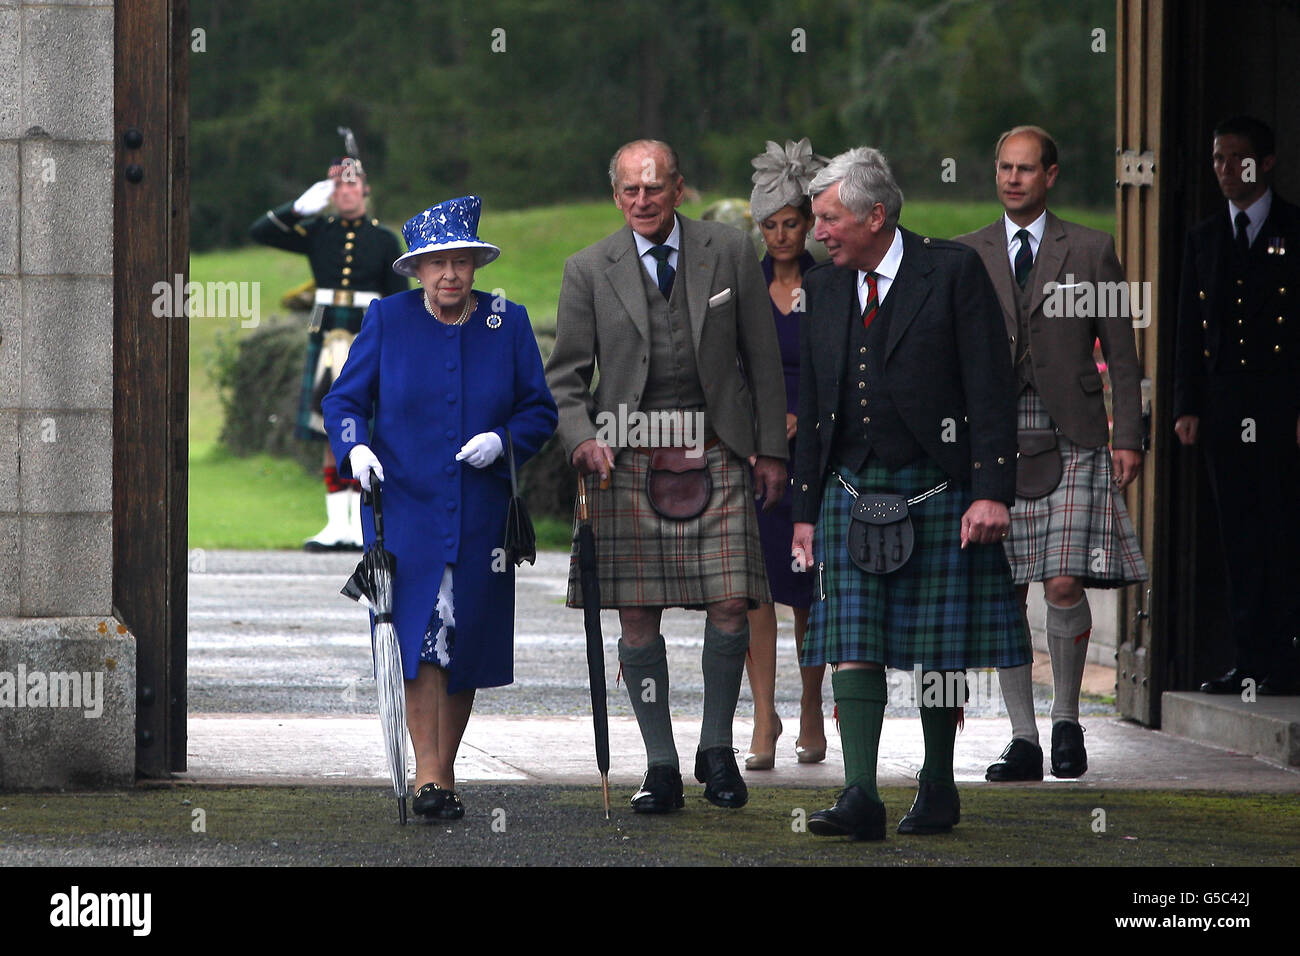 La Reina, el Príncipe Felipe y el Príncipe Eduardo asisten a una fiesta de jardín en el Castillo Balmoral, Aberdeenshire. Foto de stock